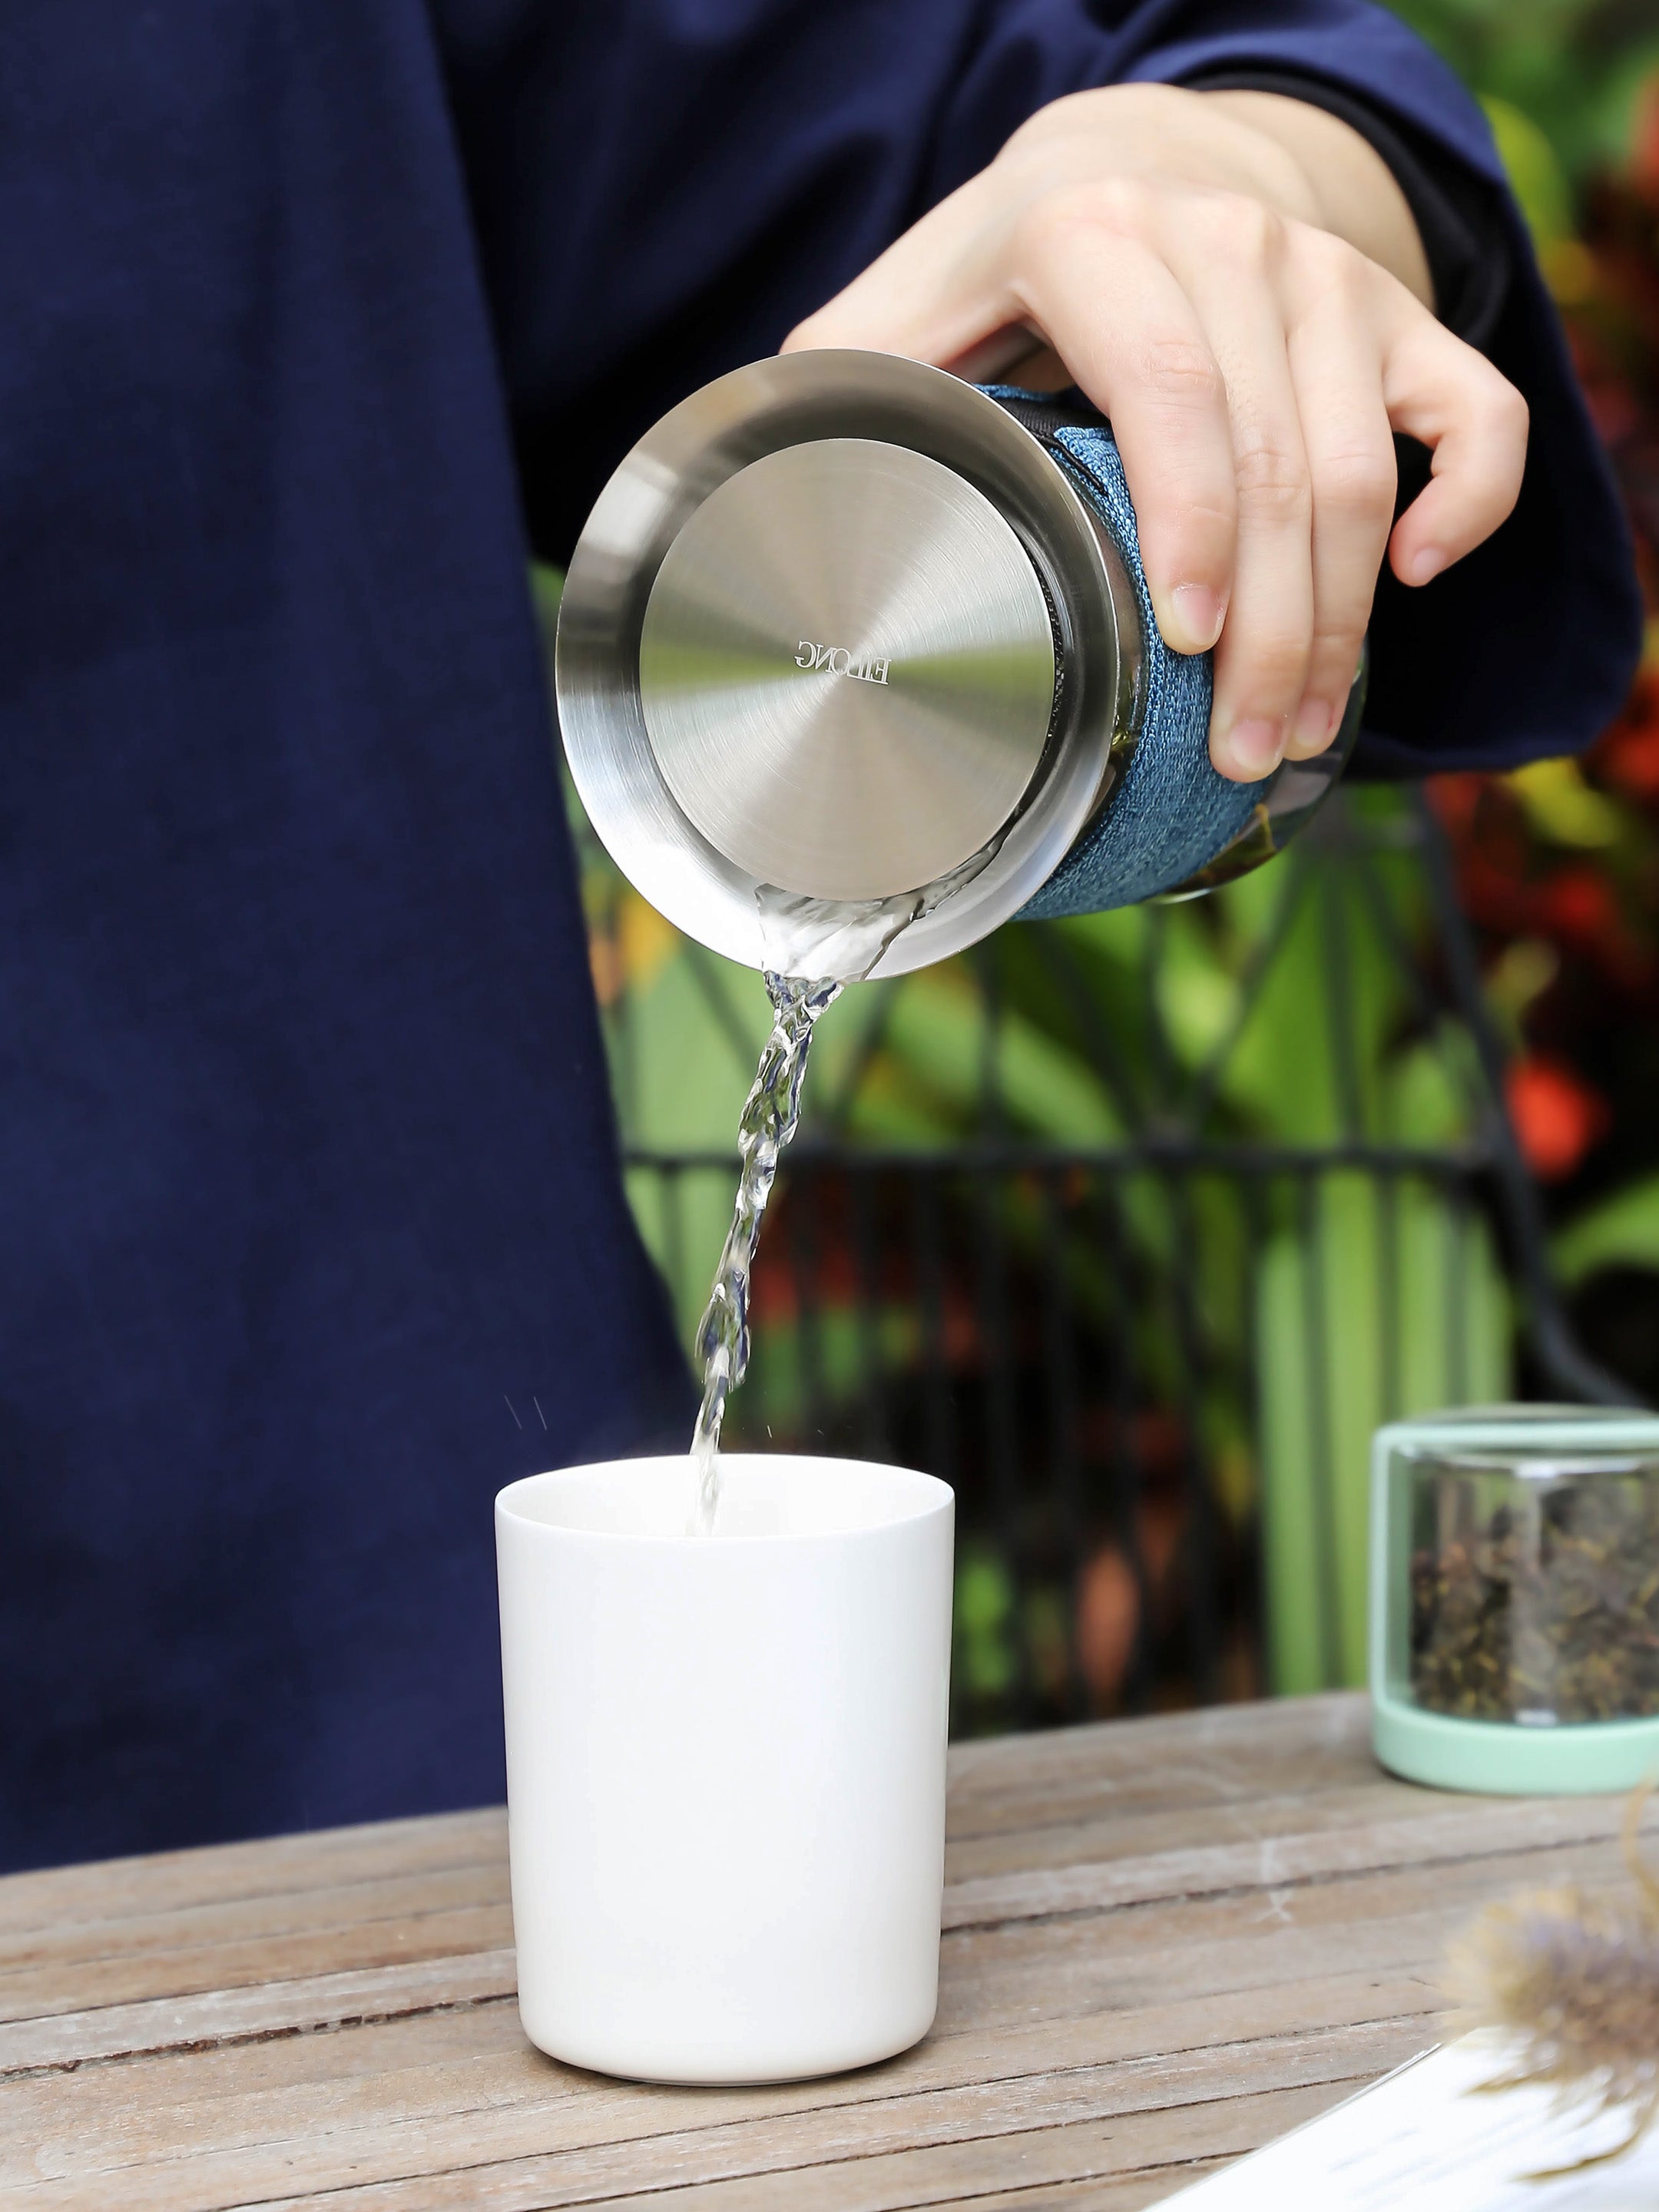 Ceramic Teapot with Filter - Tea Life 360 Teapot 15oz – EILONG®